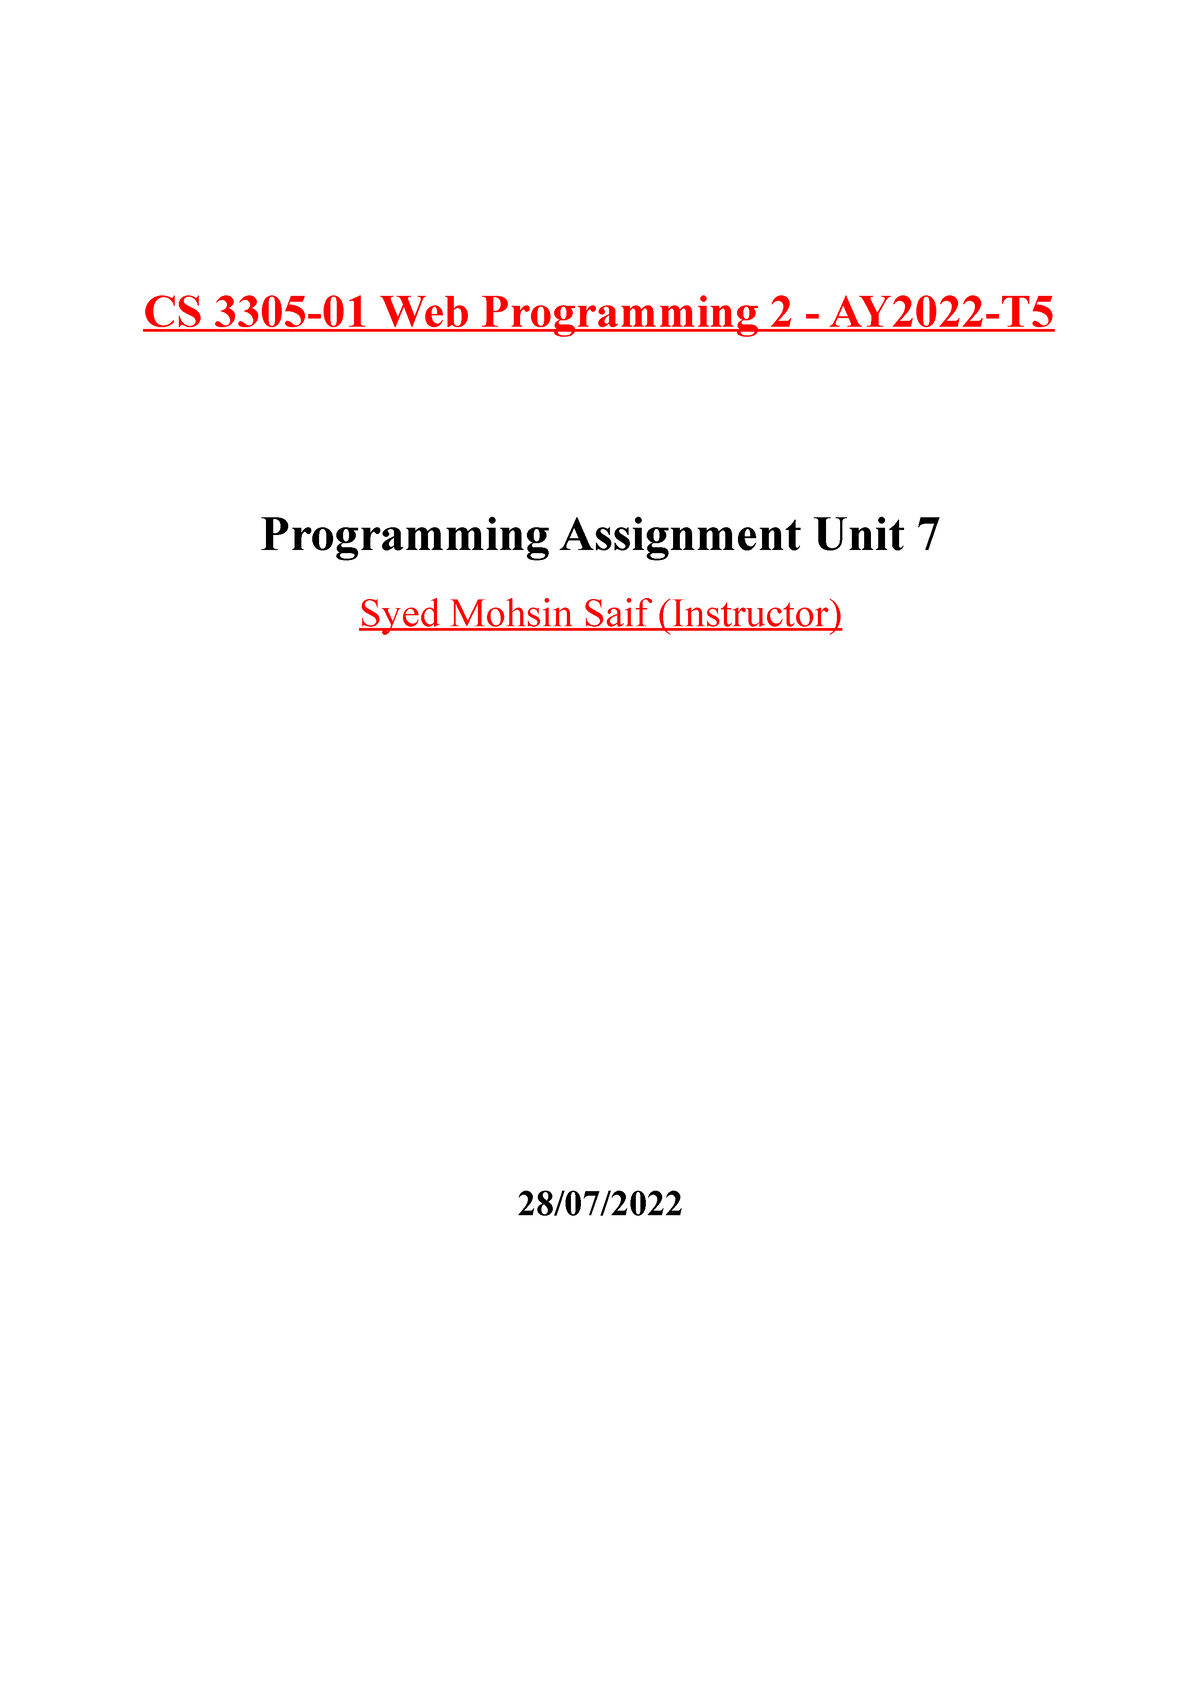 written assignment unit 7